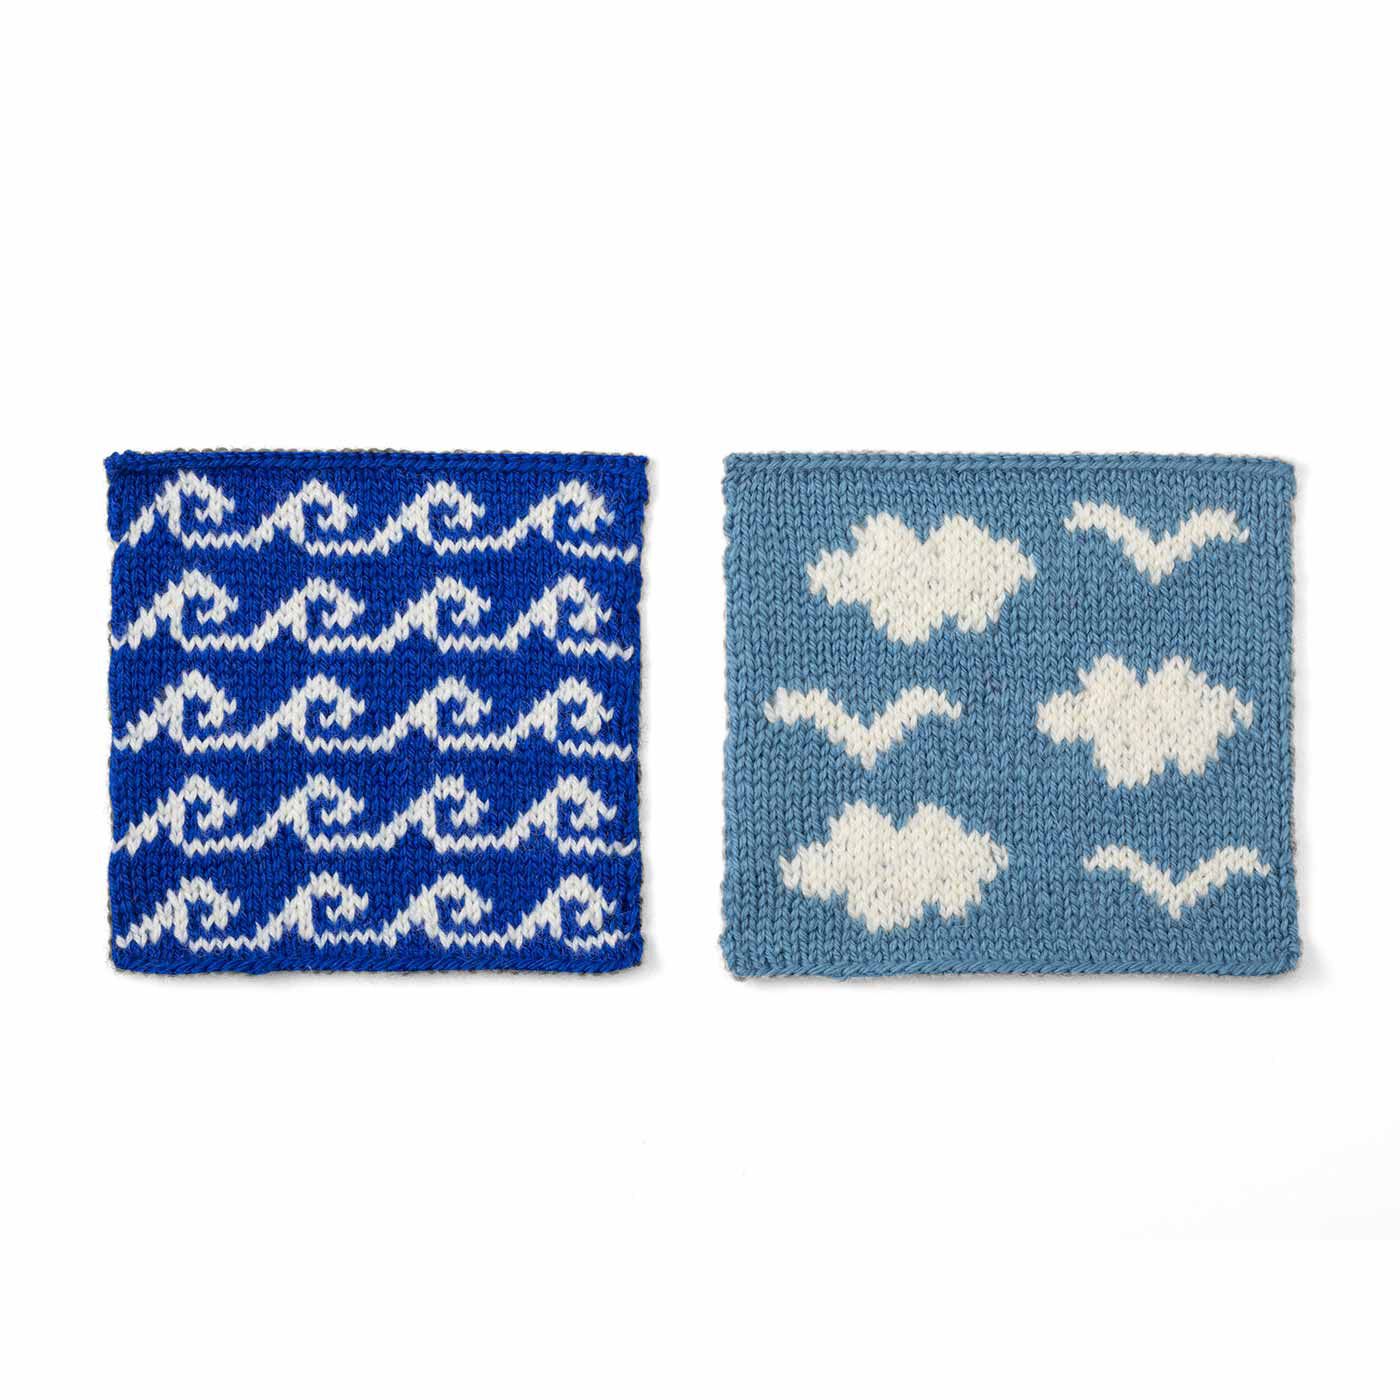 クチュリエ|自然からの贈りもの めくるめく北欧模様を楽しむ棒針編みサンプラーの会|波と雲とカモメ